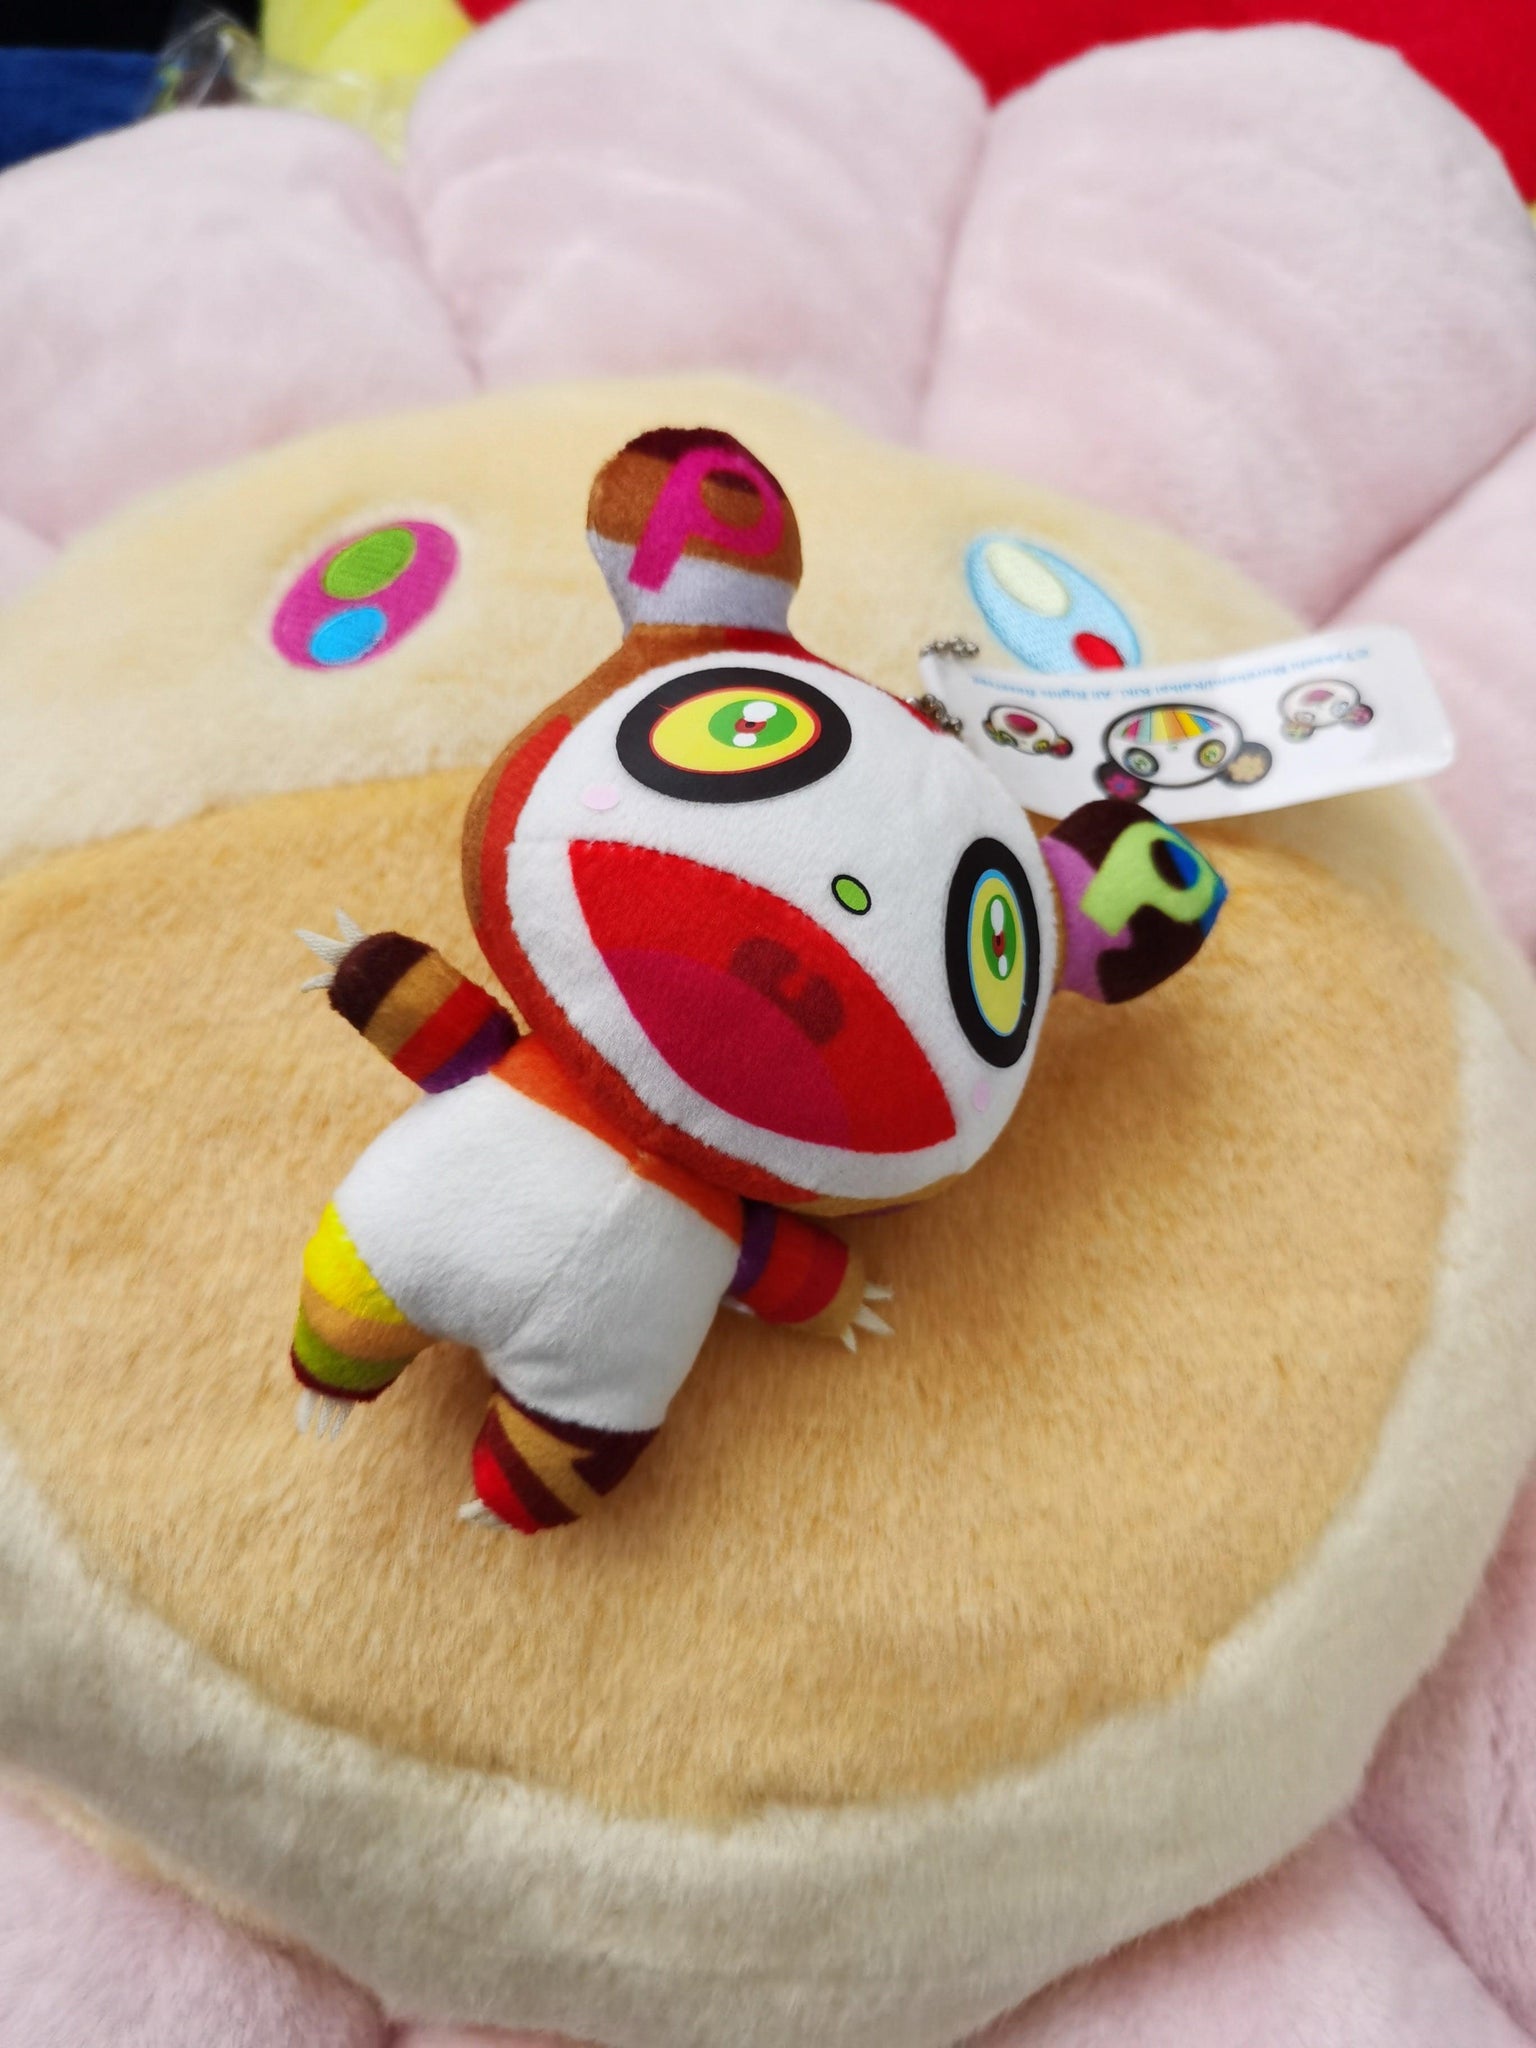 NTWRK - Takashi Murakami Kaikai Kiki toy doll Keychain Panda